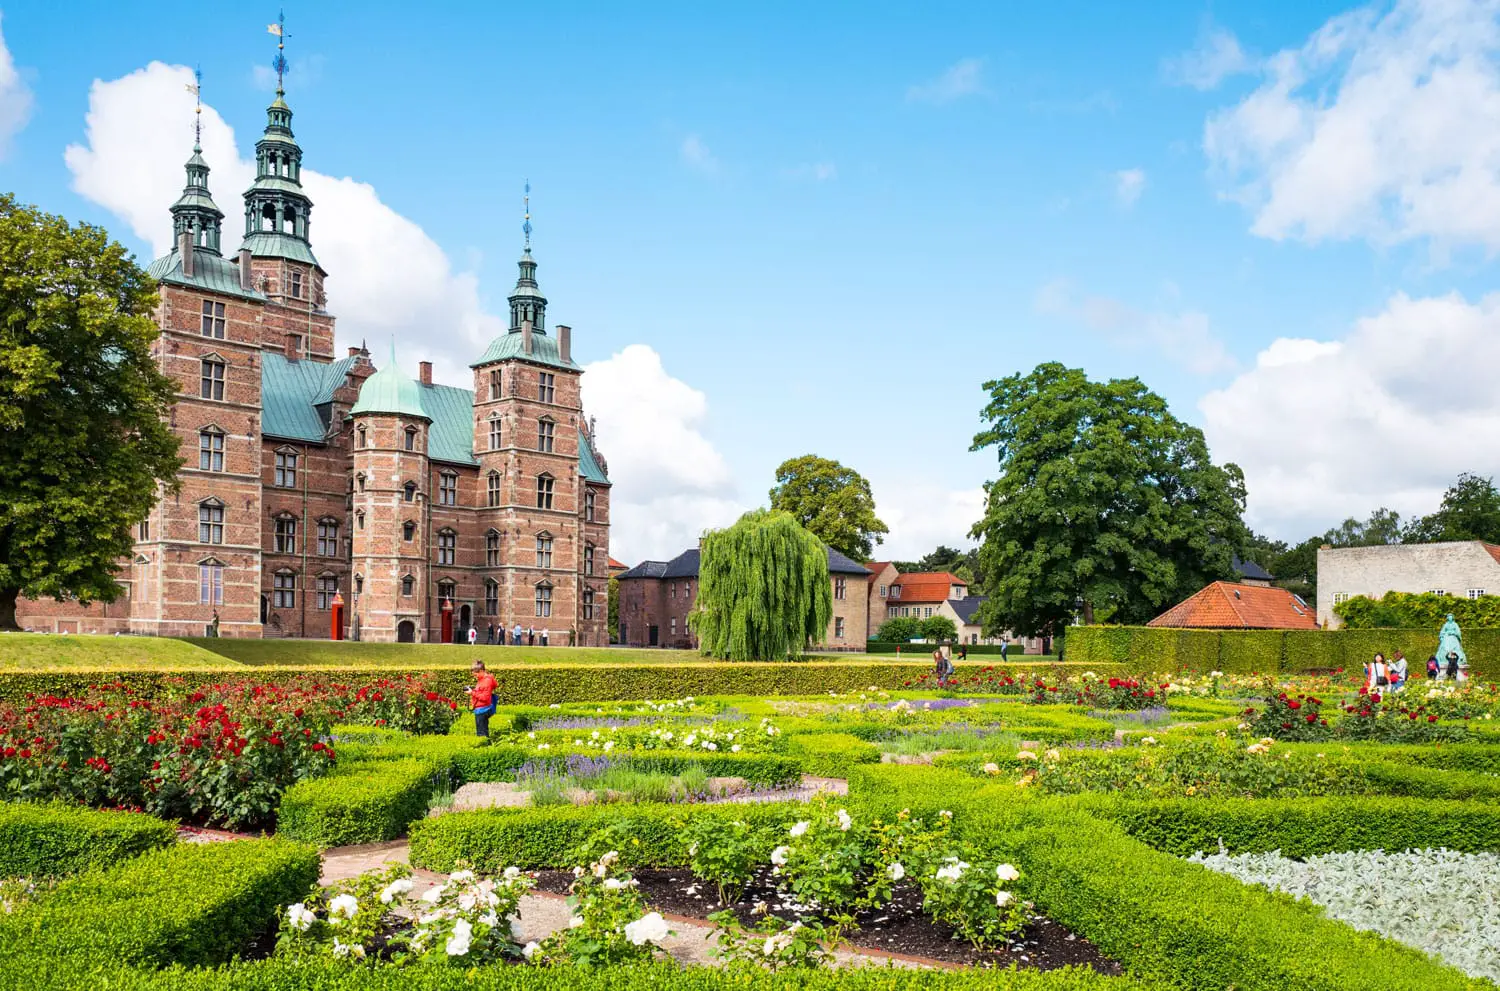 Το κάστρο Rosenborg φαίνεται από τον κήπο του βασιλιά στην Κοπεγχάγη της Δανίας